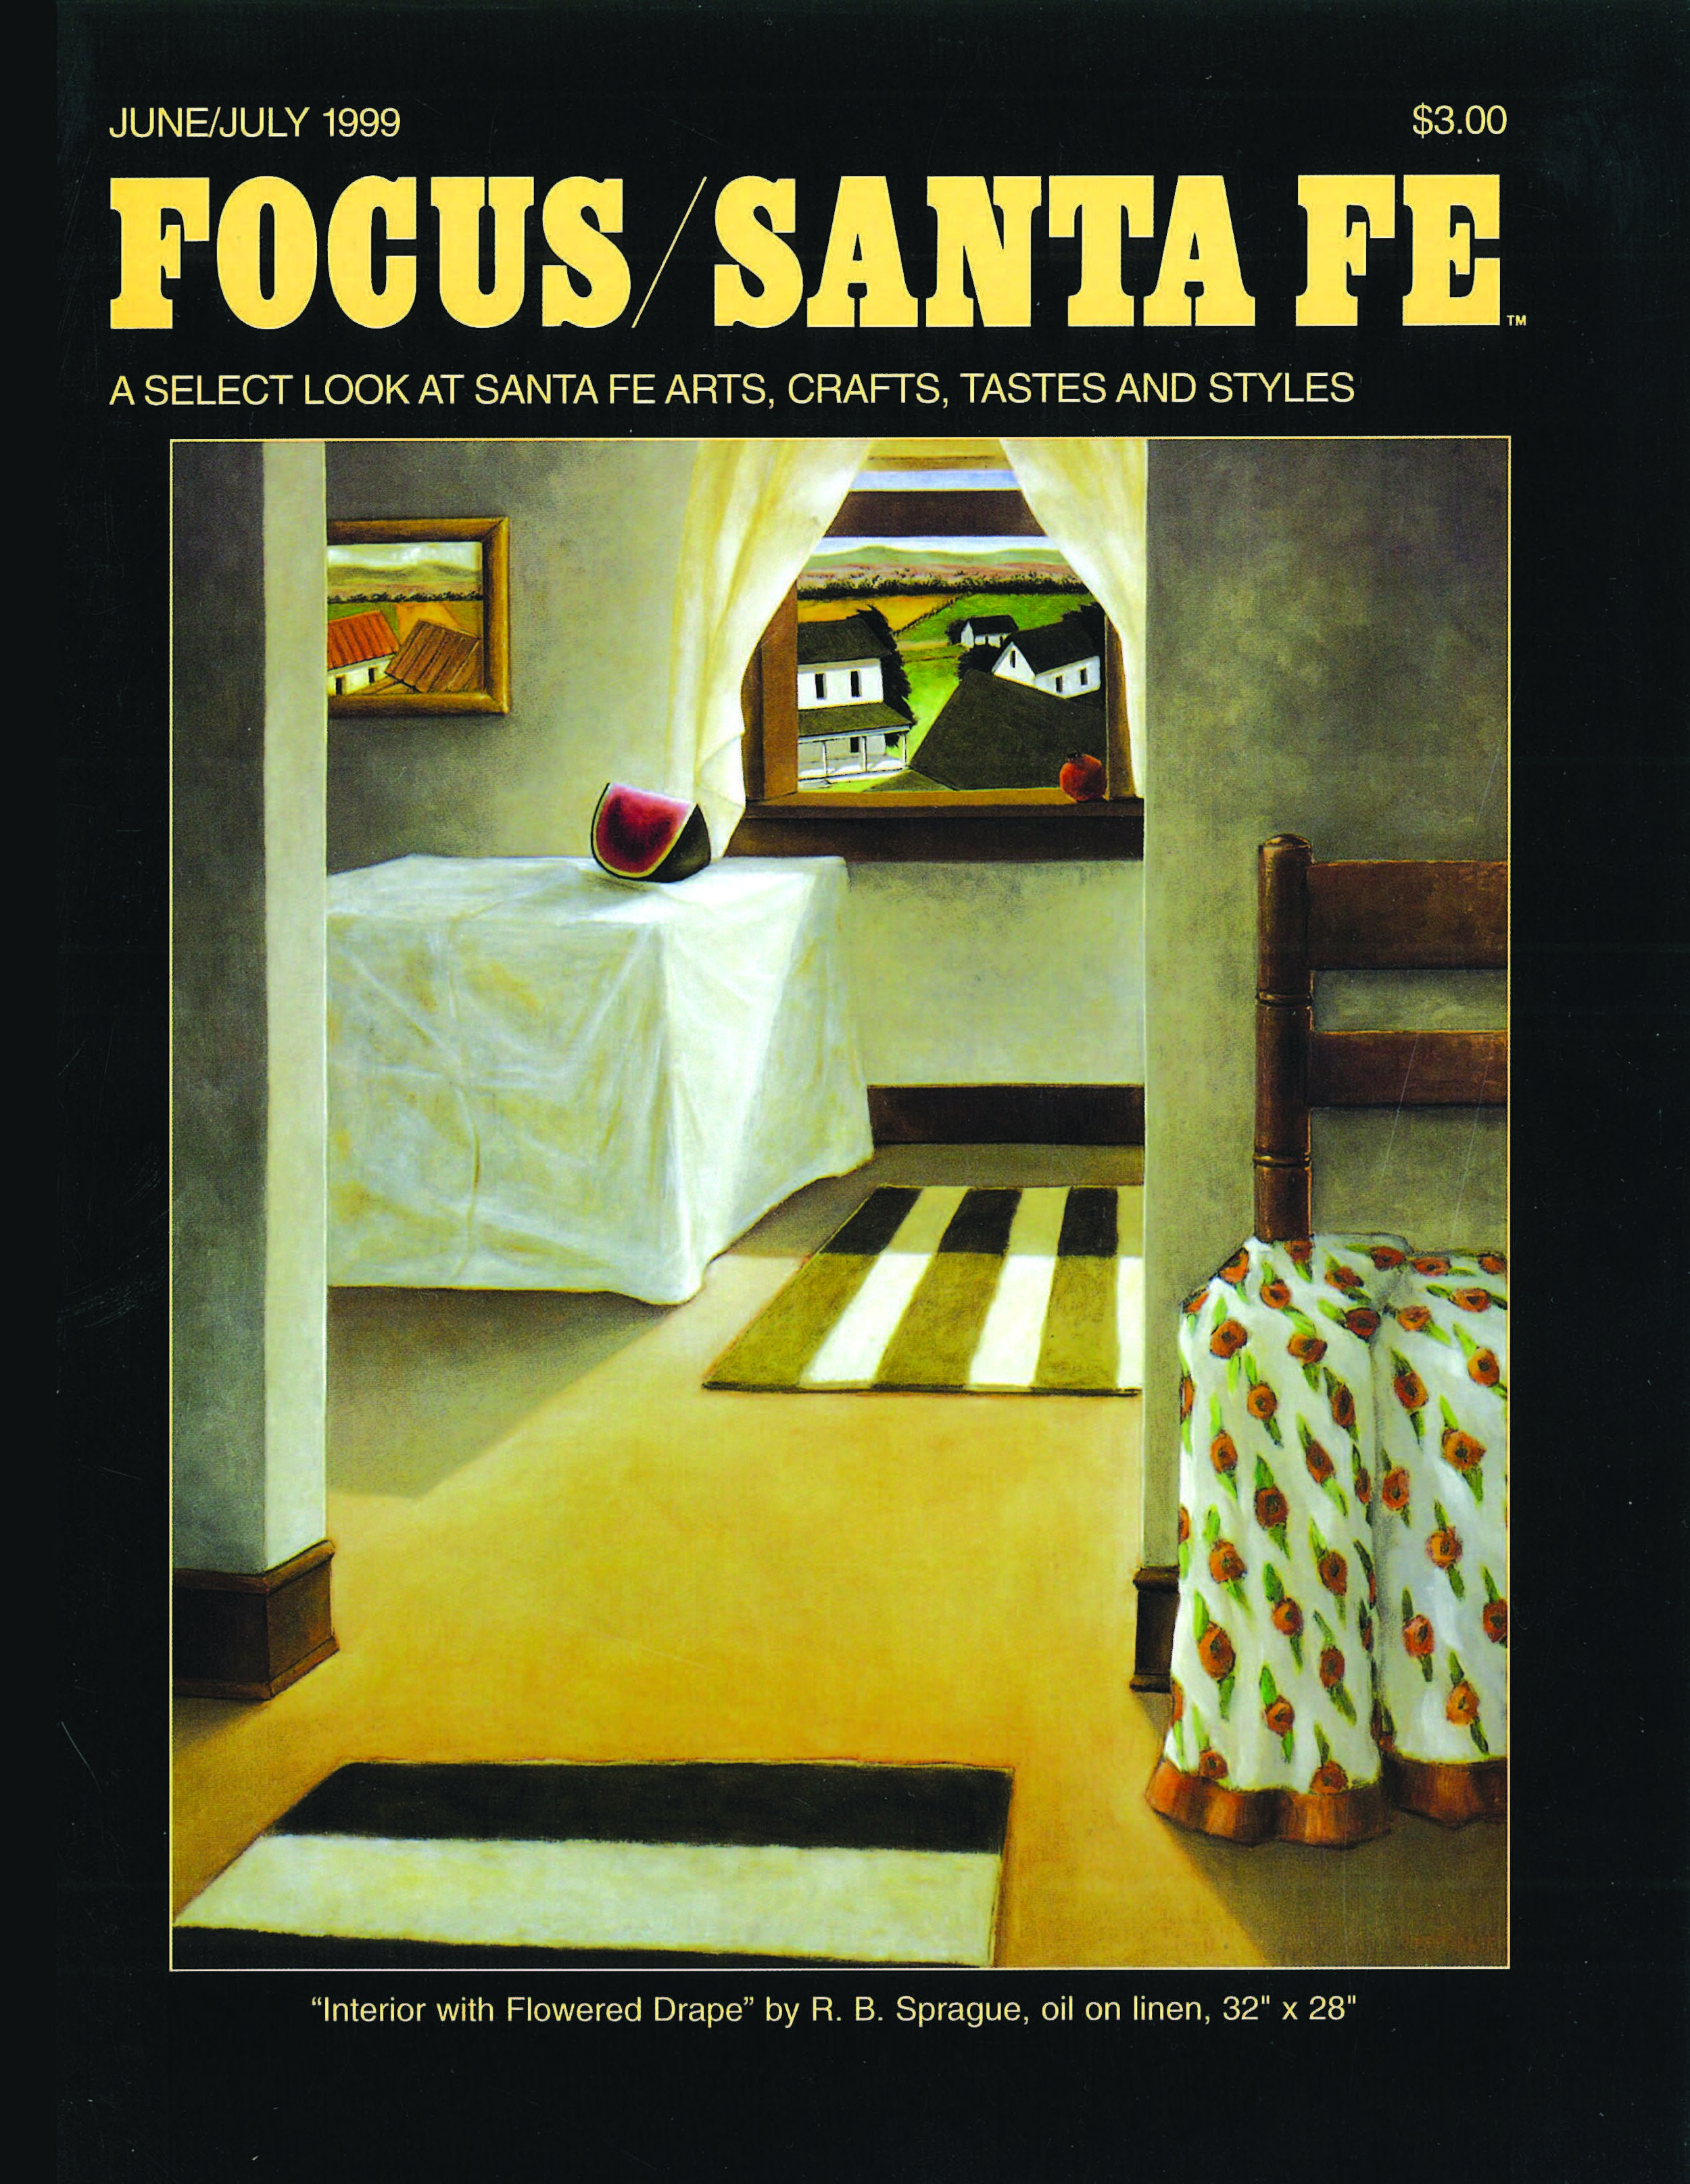 Focus_SantaFe_June_1999_Page_1.jpg